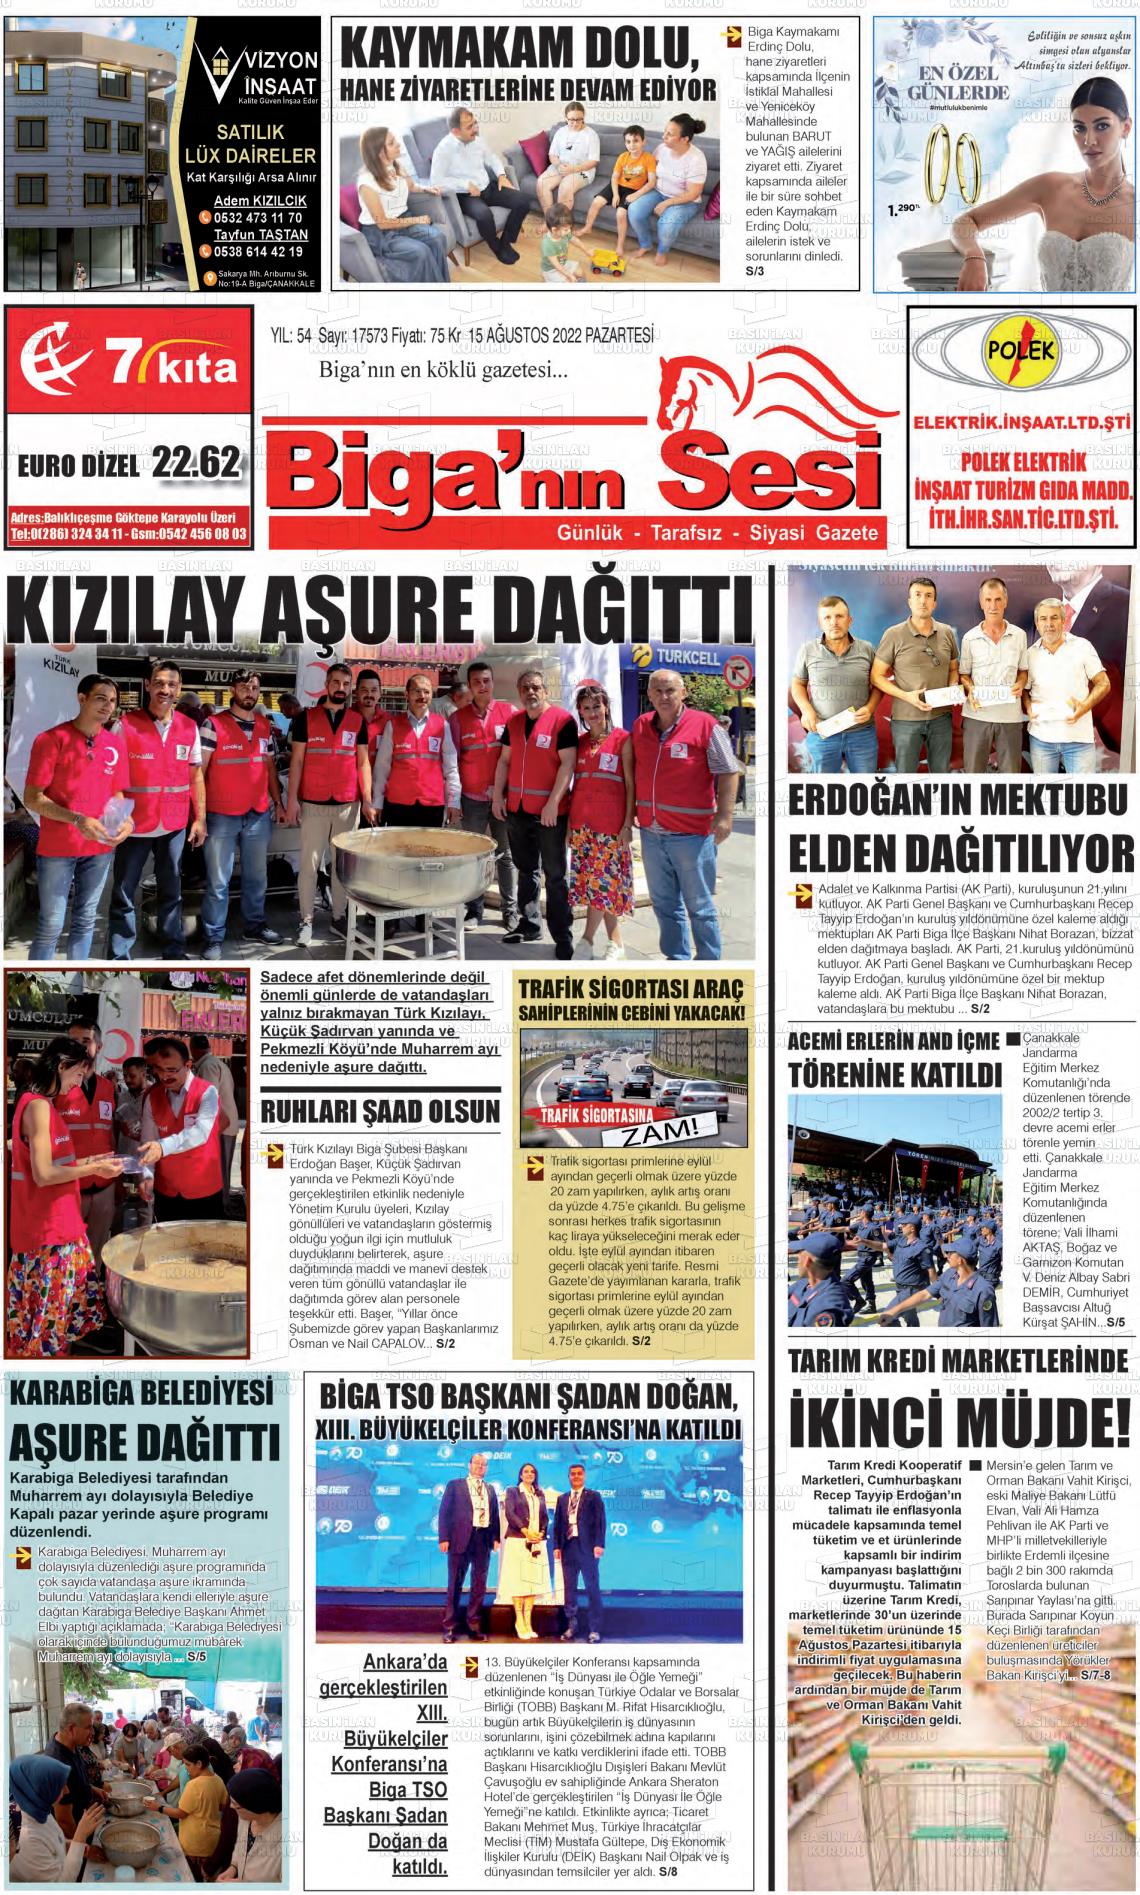 15 Ağustos 2022 Biga'nın Sesi Gazete Manşeti